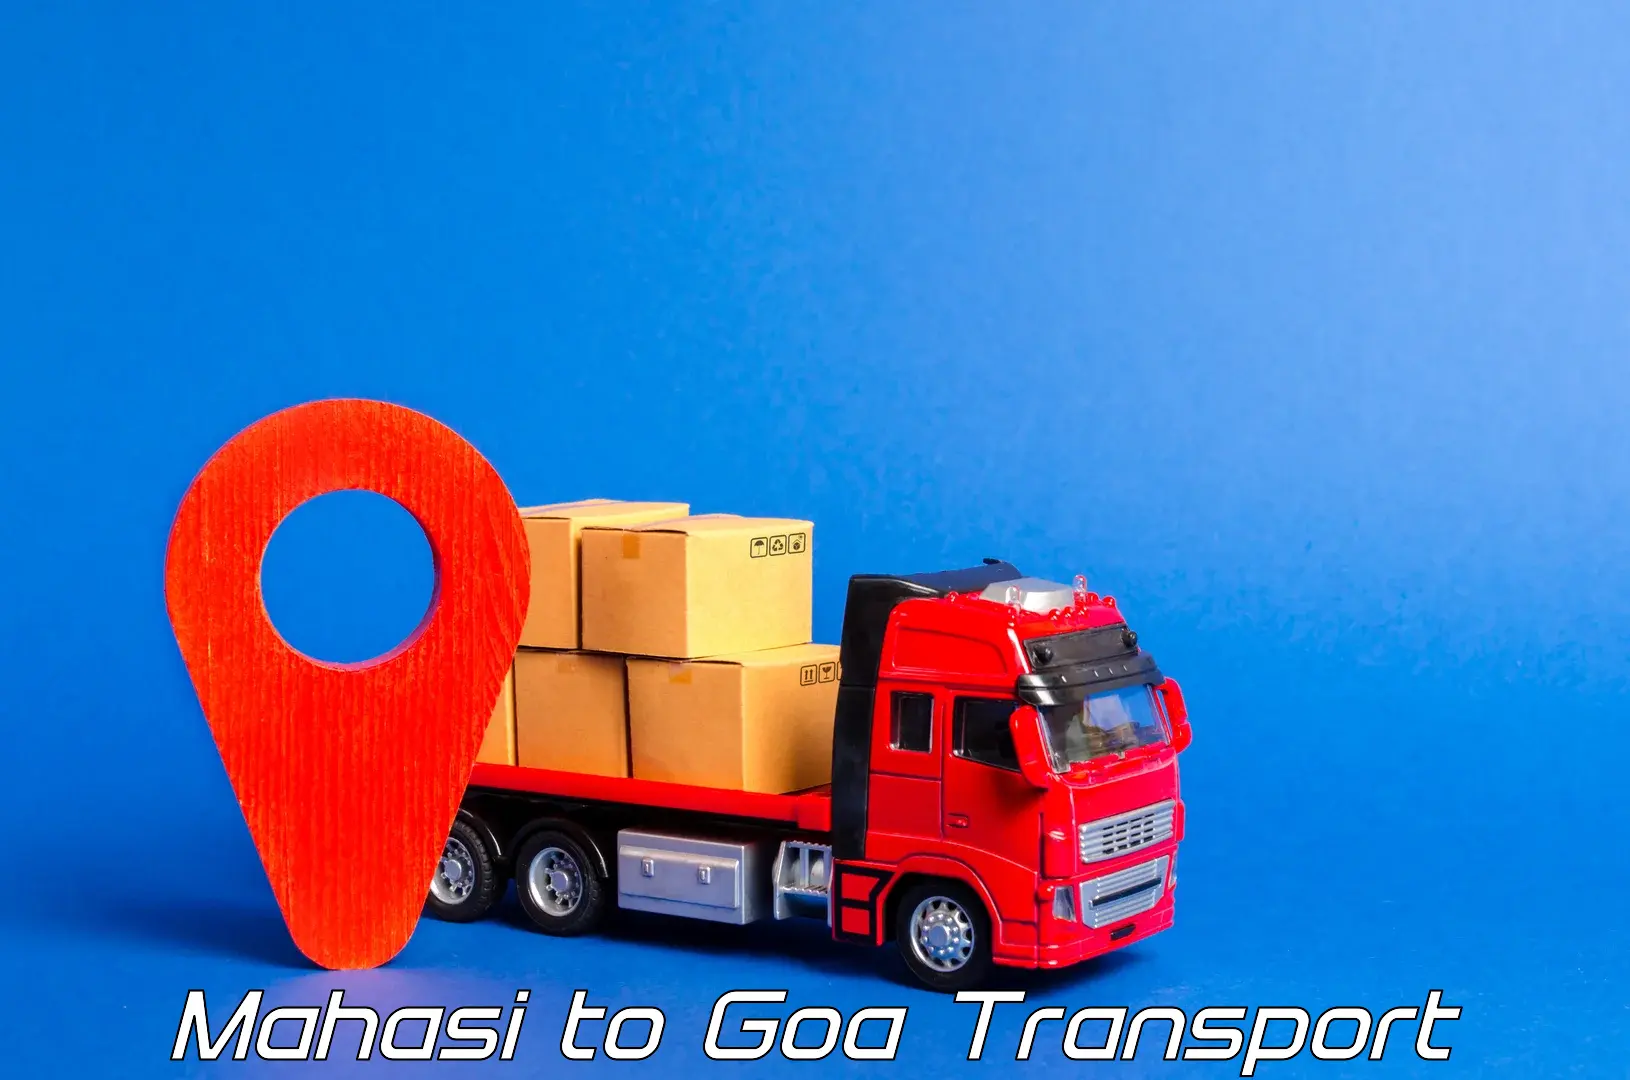 Daily parcel service transport in Mahasi to Vasco da Gama